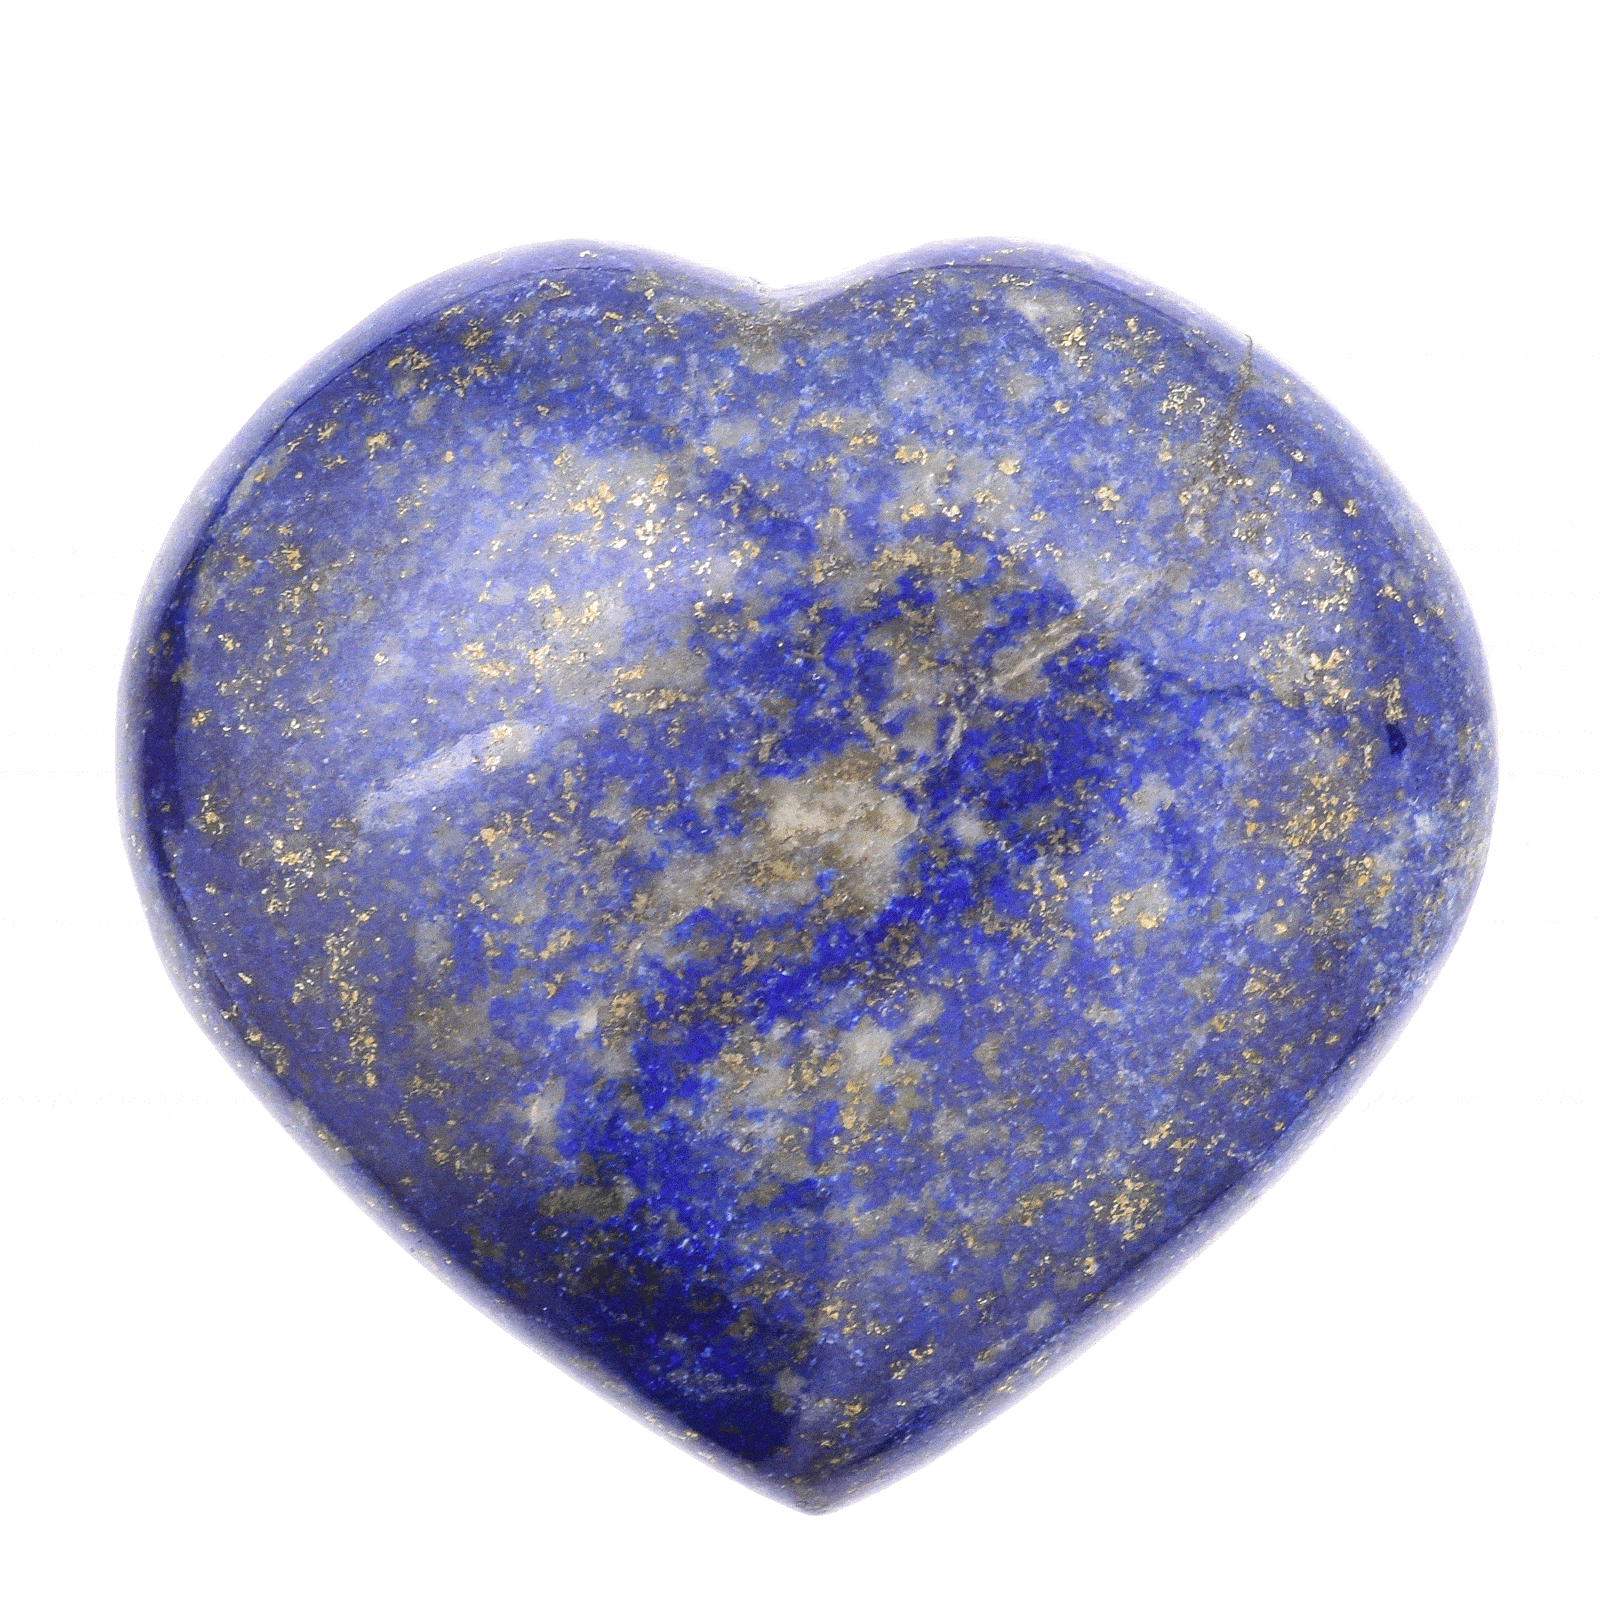 Φυσική πέτρα Λάπι Λάζουλι σκαλισμένη στη μορφή καρδιάς, μεγέθους 6cm. Αγοράστε online shop.